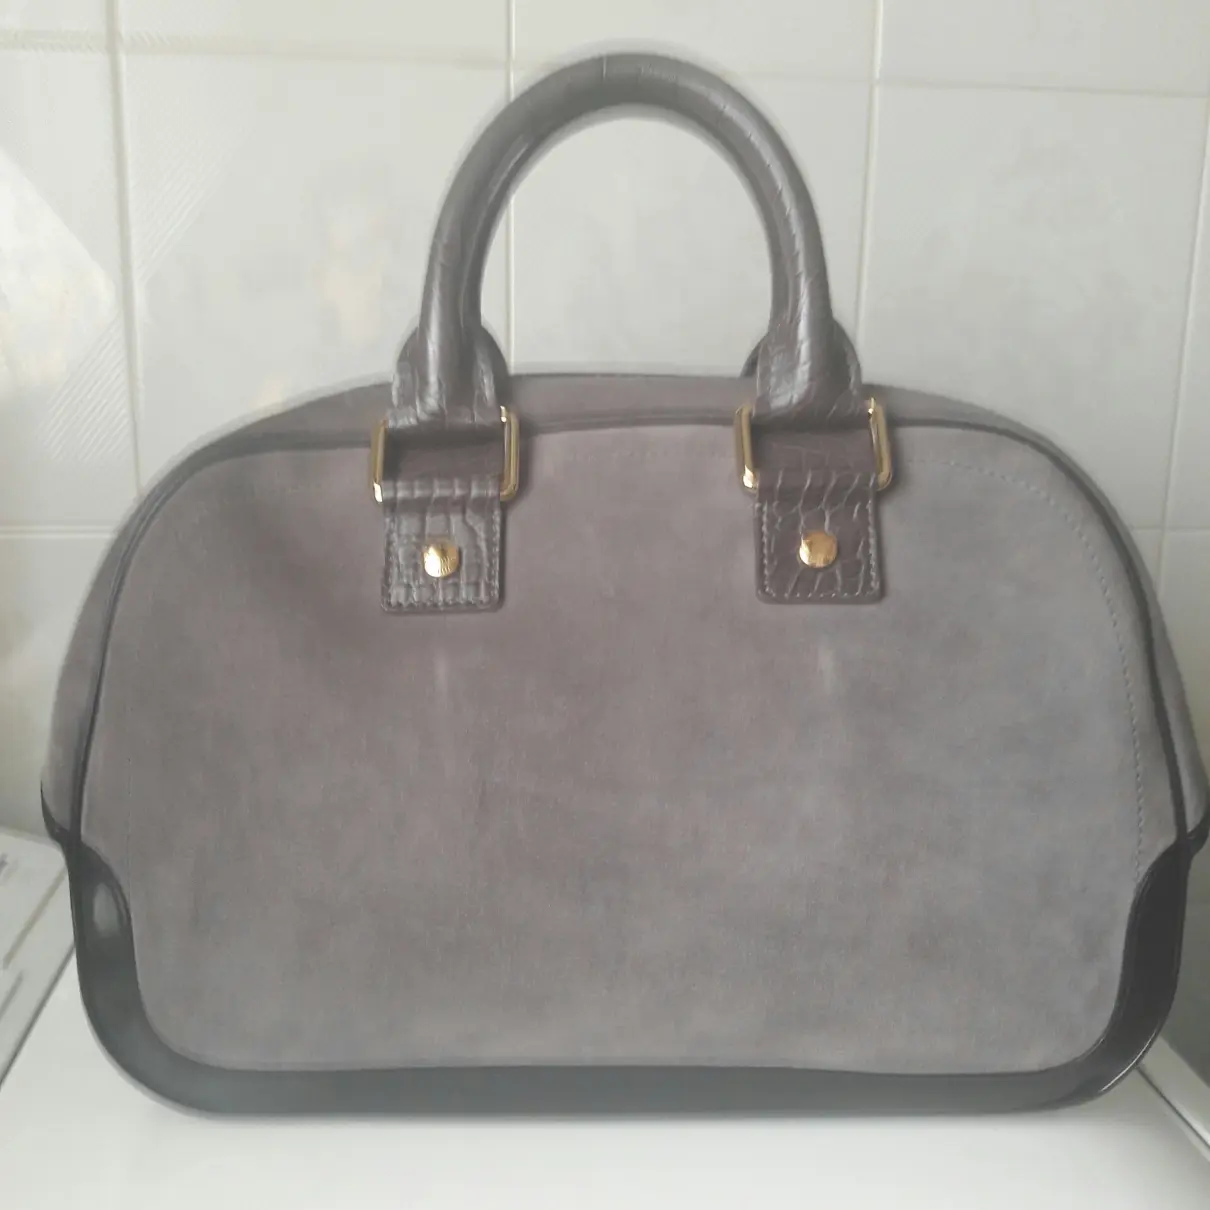 Louis Vuitton Handbag for sale - Vintage